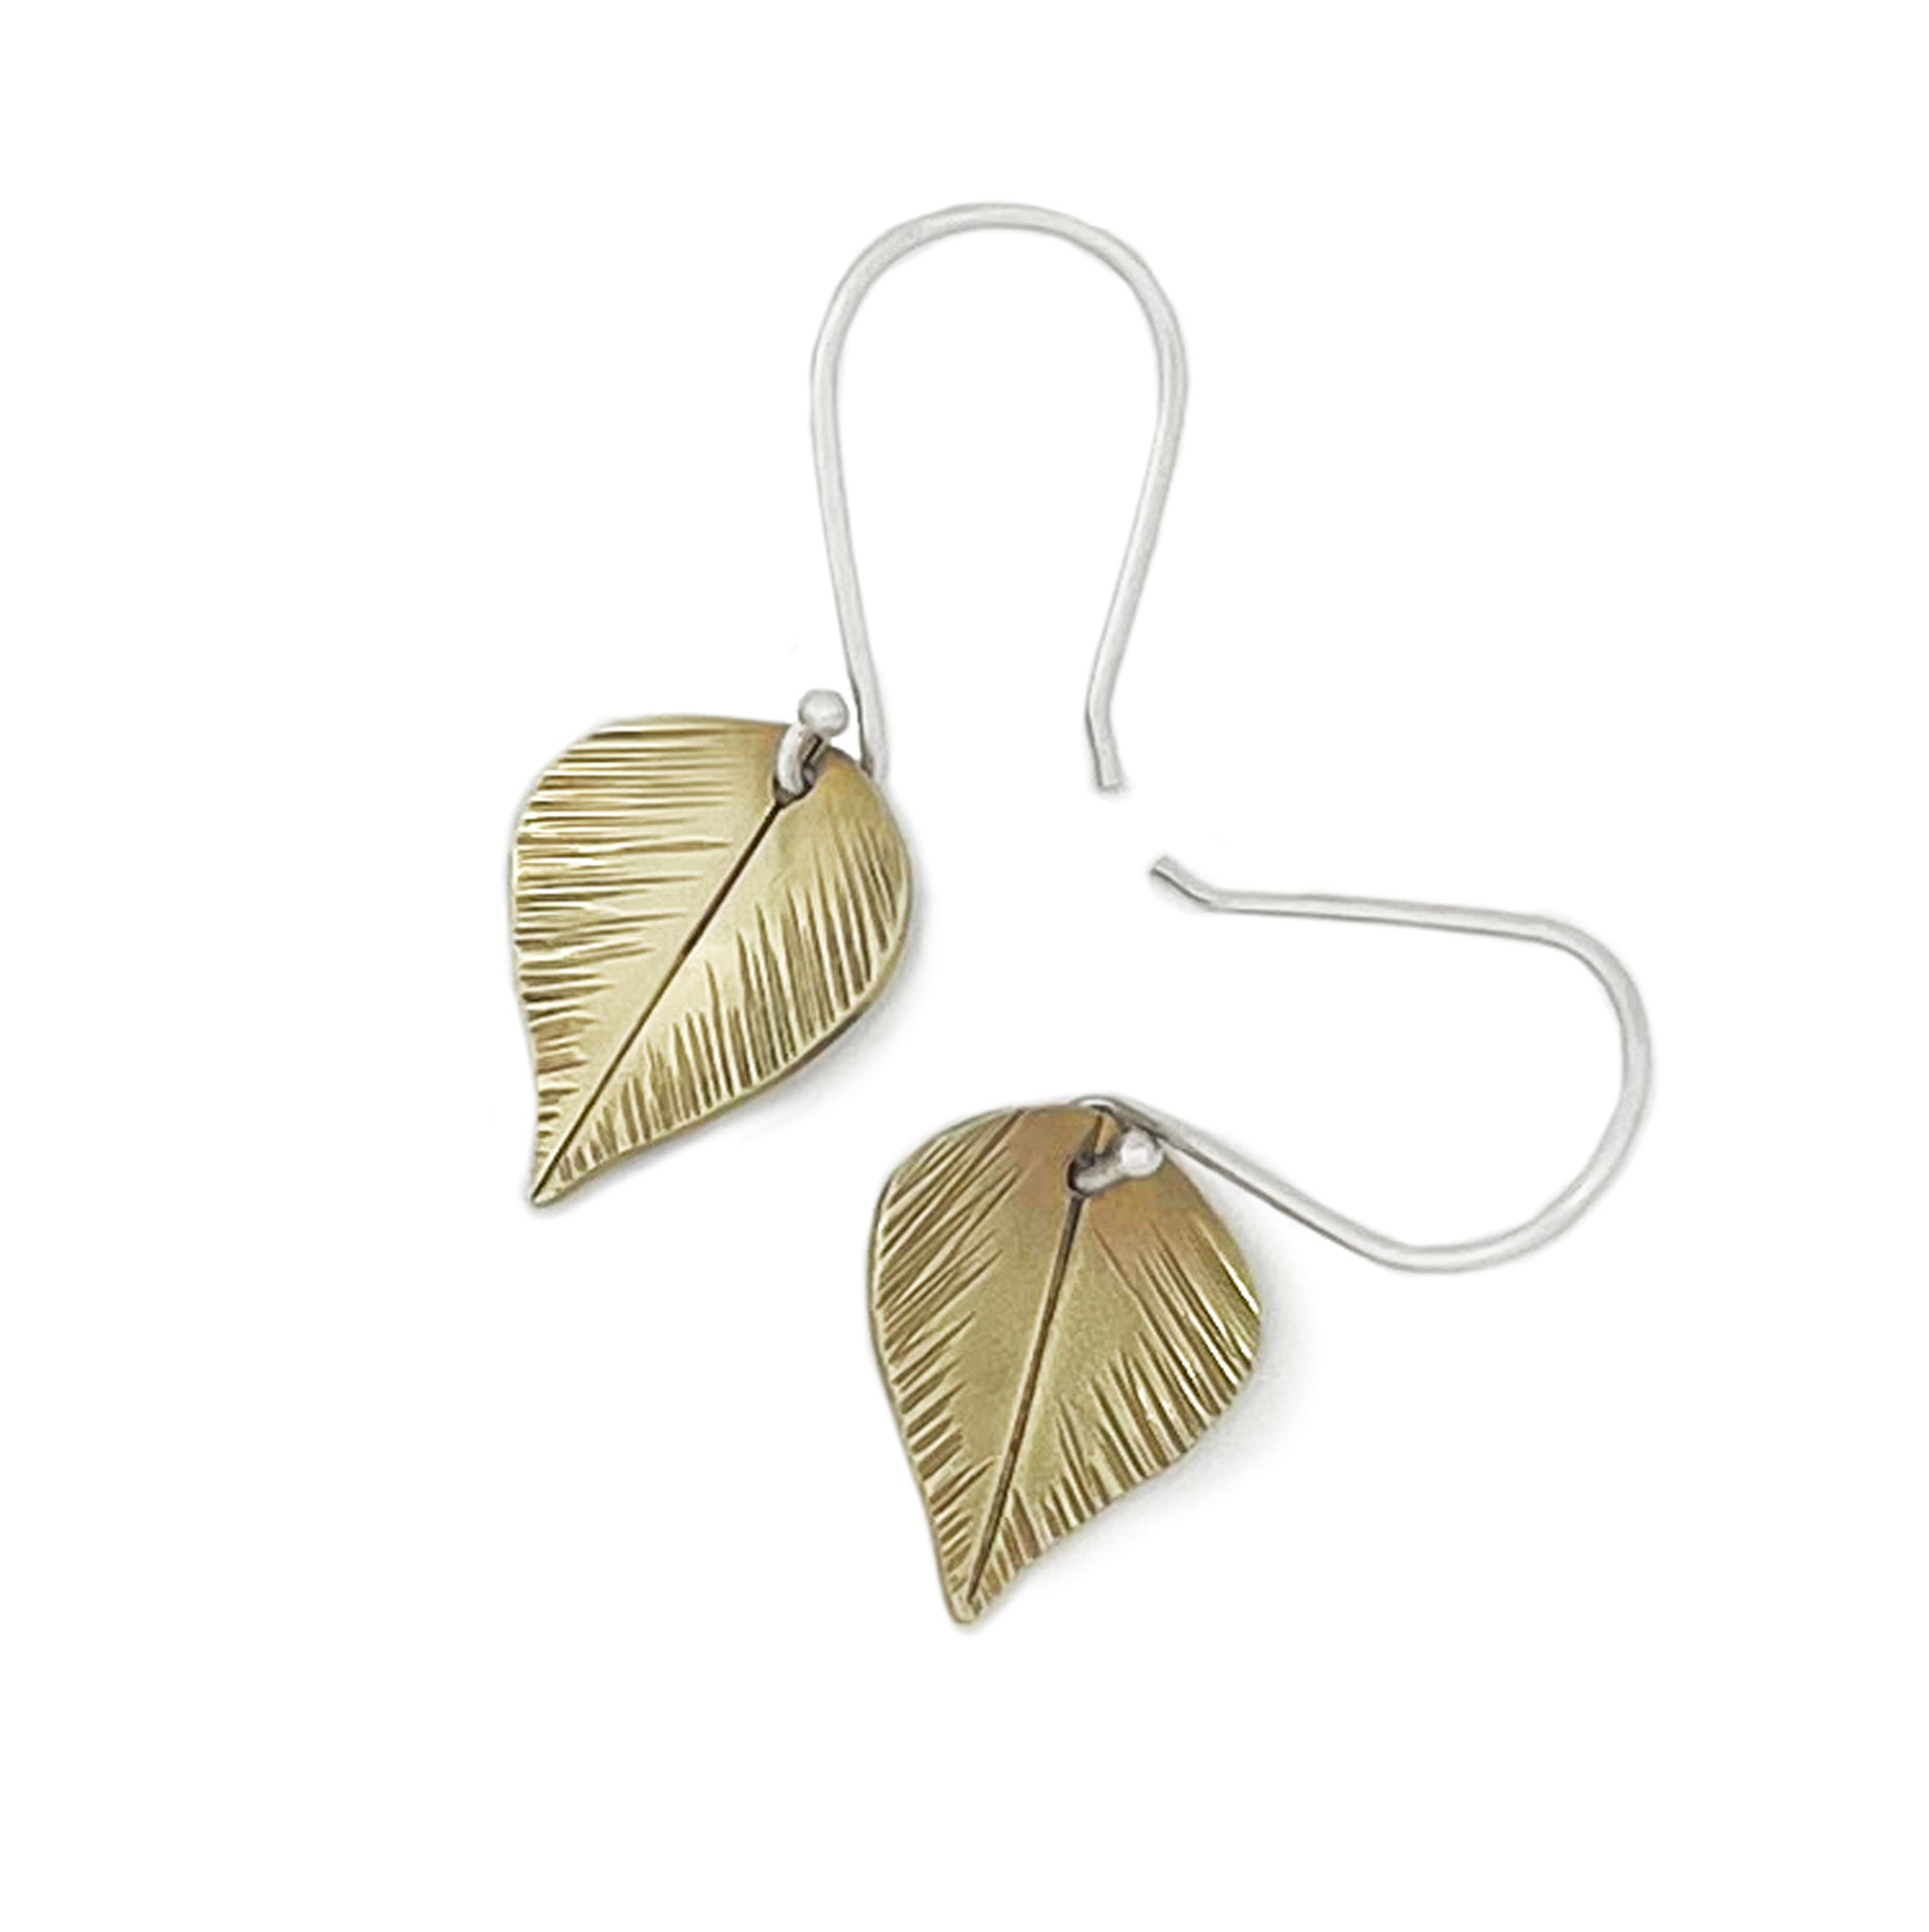 Brass Birch Leaf Earrings - Mixed Metal Earrings   7313 - handmade by Beth Millner Jewelry